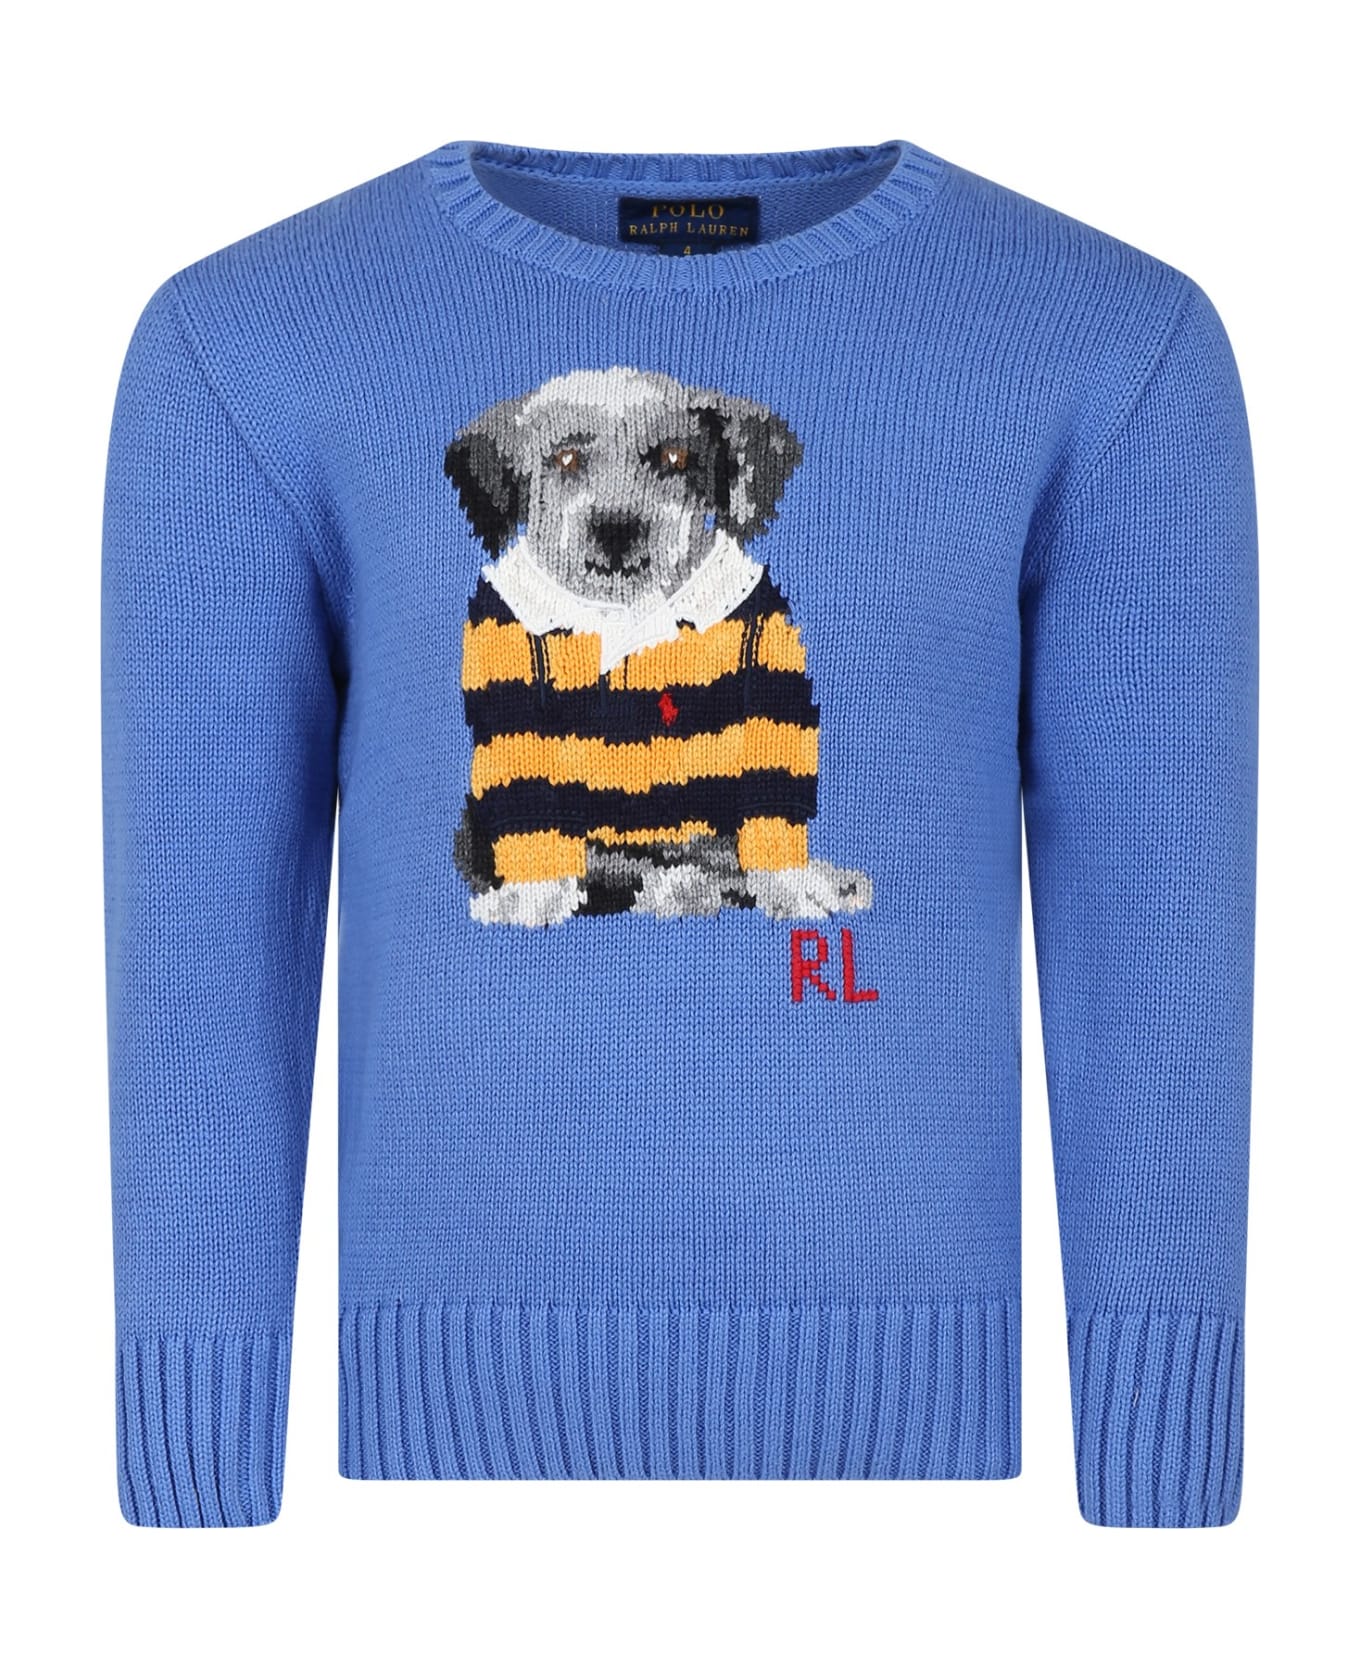 Ralph Lauren Light Blue Sweater For Boy With Dog - Light Blue